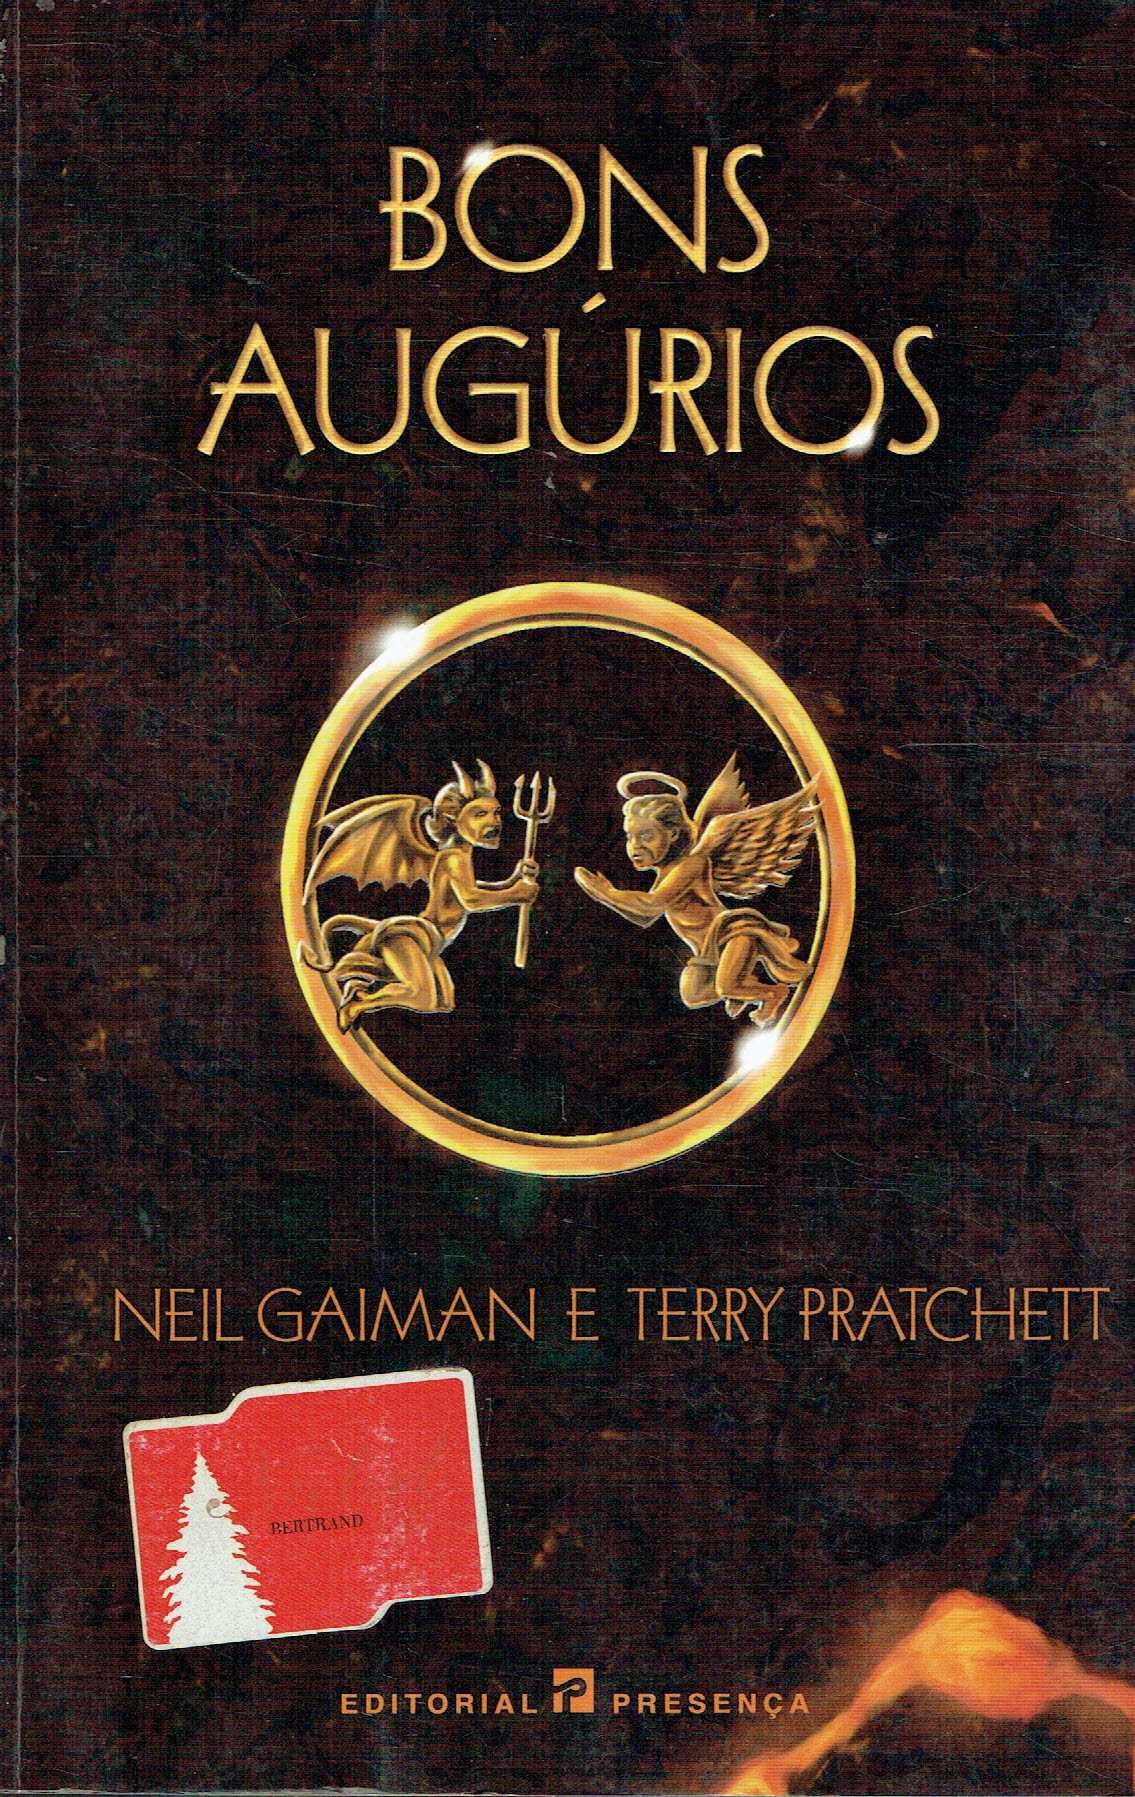 15394

Bons Augúrios
de Neil Gaiman e Terry Pratchett